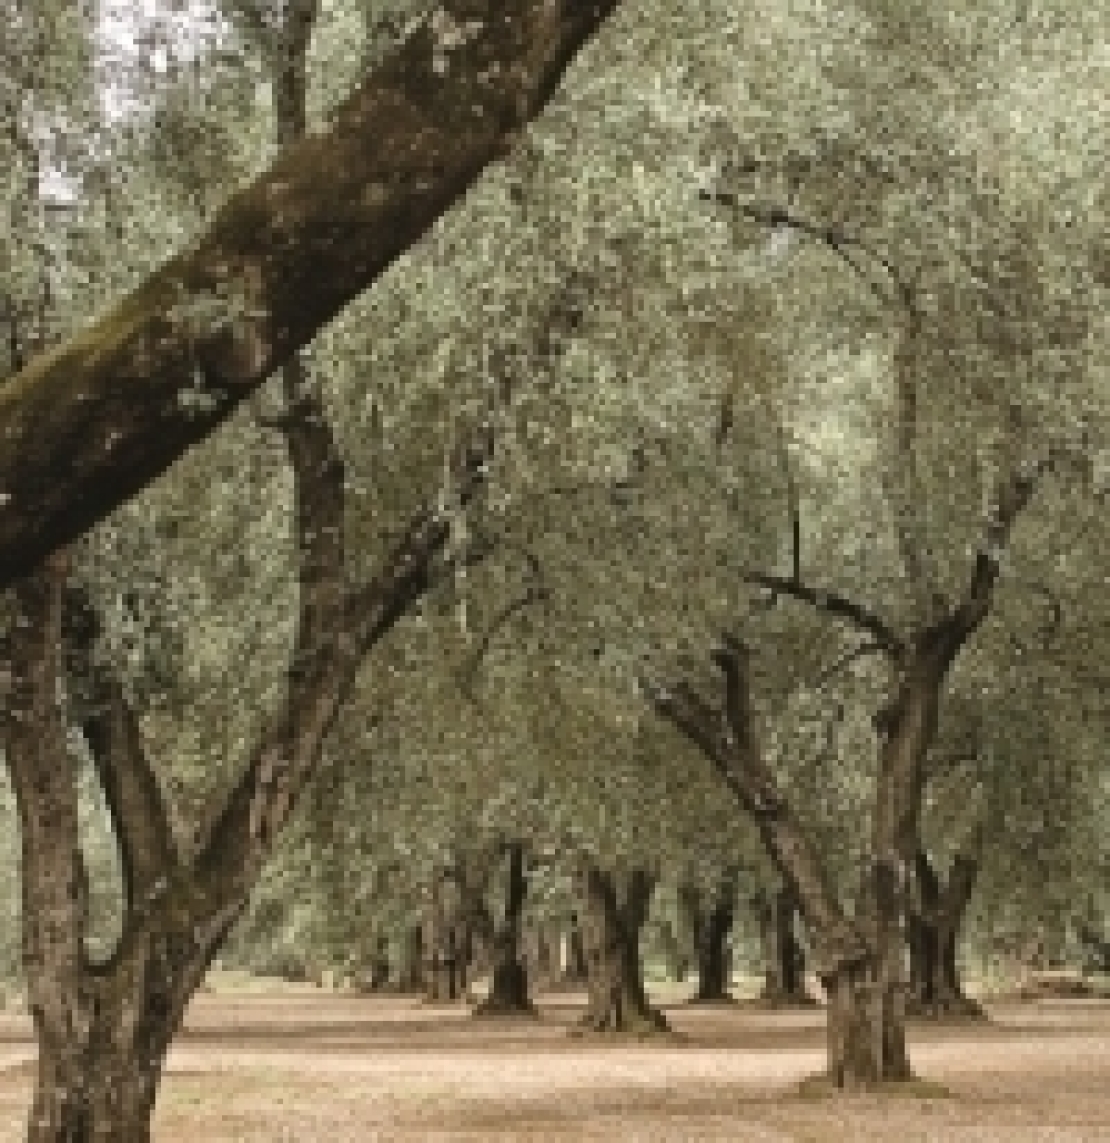 Inconsuete presenze negli oliveti del sud Italia